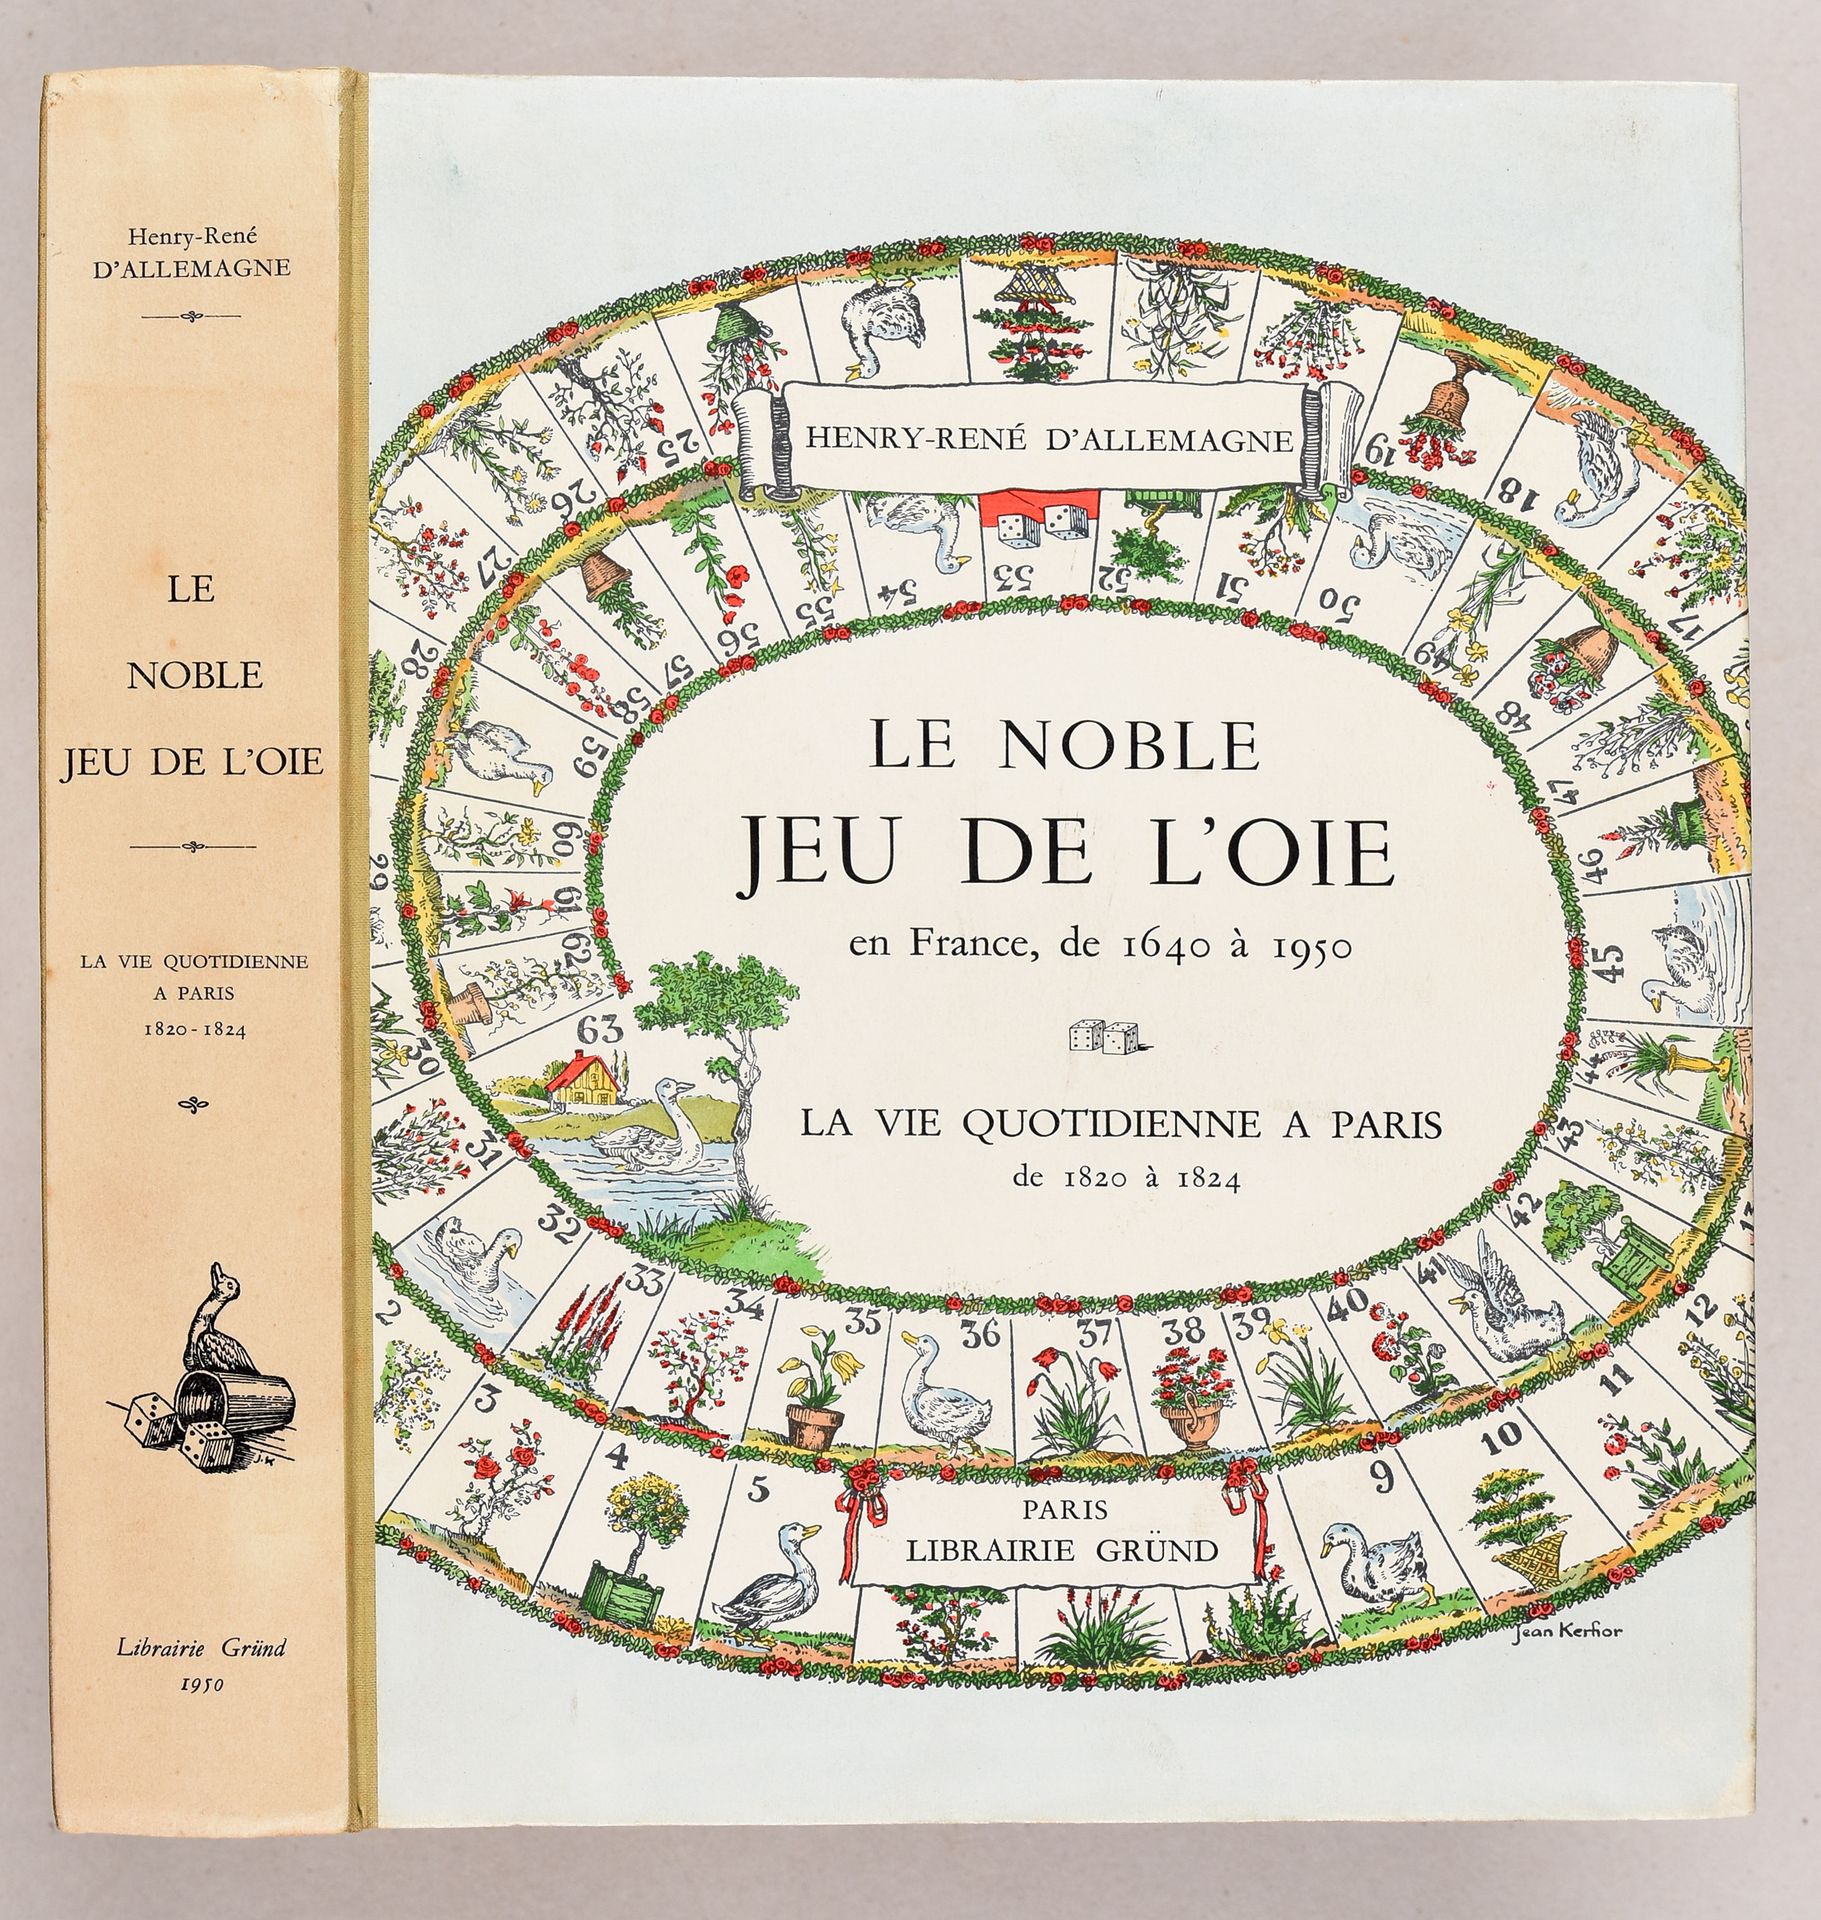 Null ALLEMAGNE, Henry-René d' Le noble jeu de l'oie en France, de 1640 à 1950. Q&hellip;